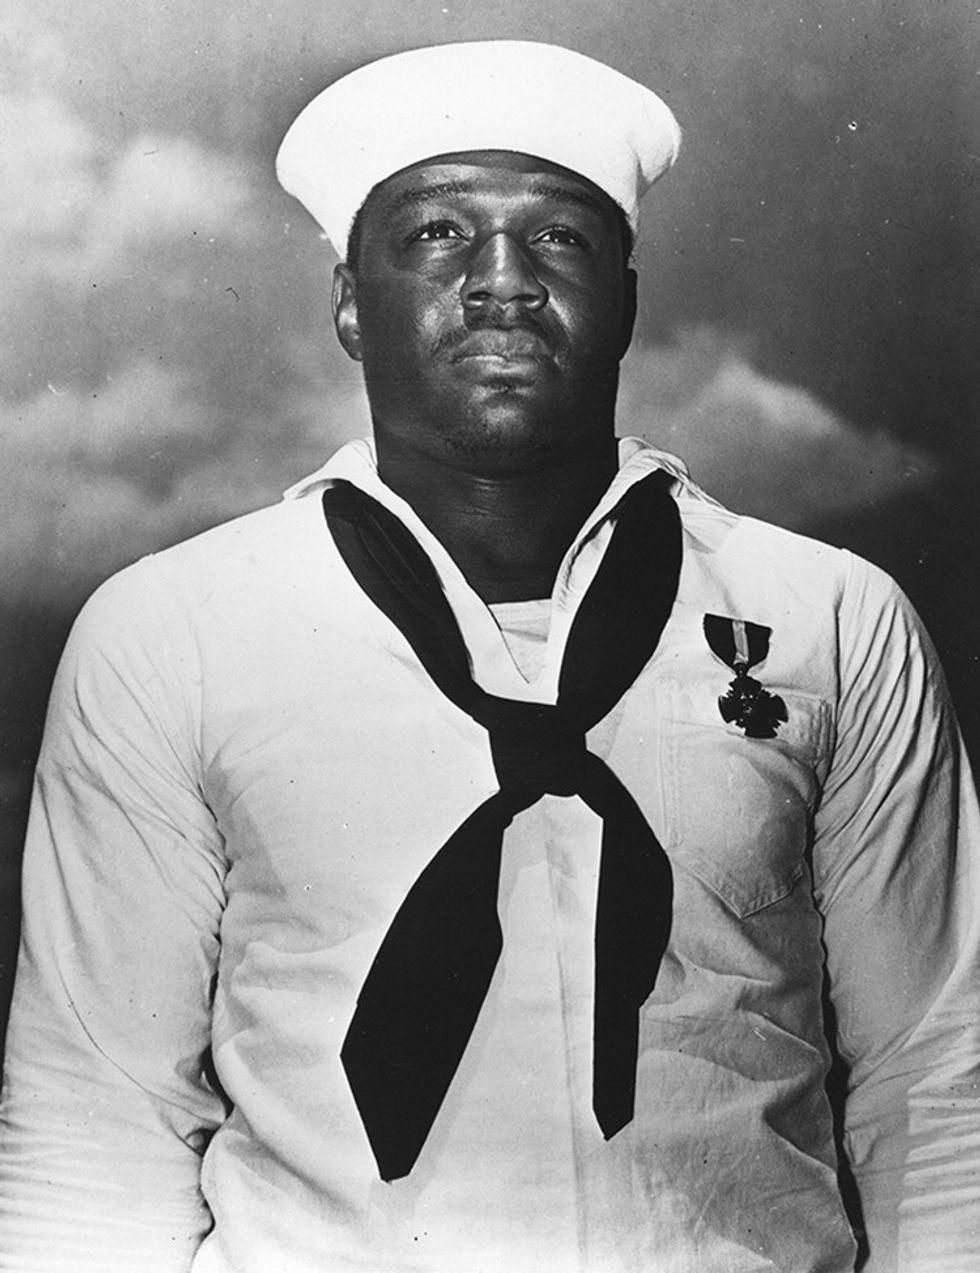 Héroe de Pearl Harbor